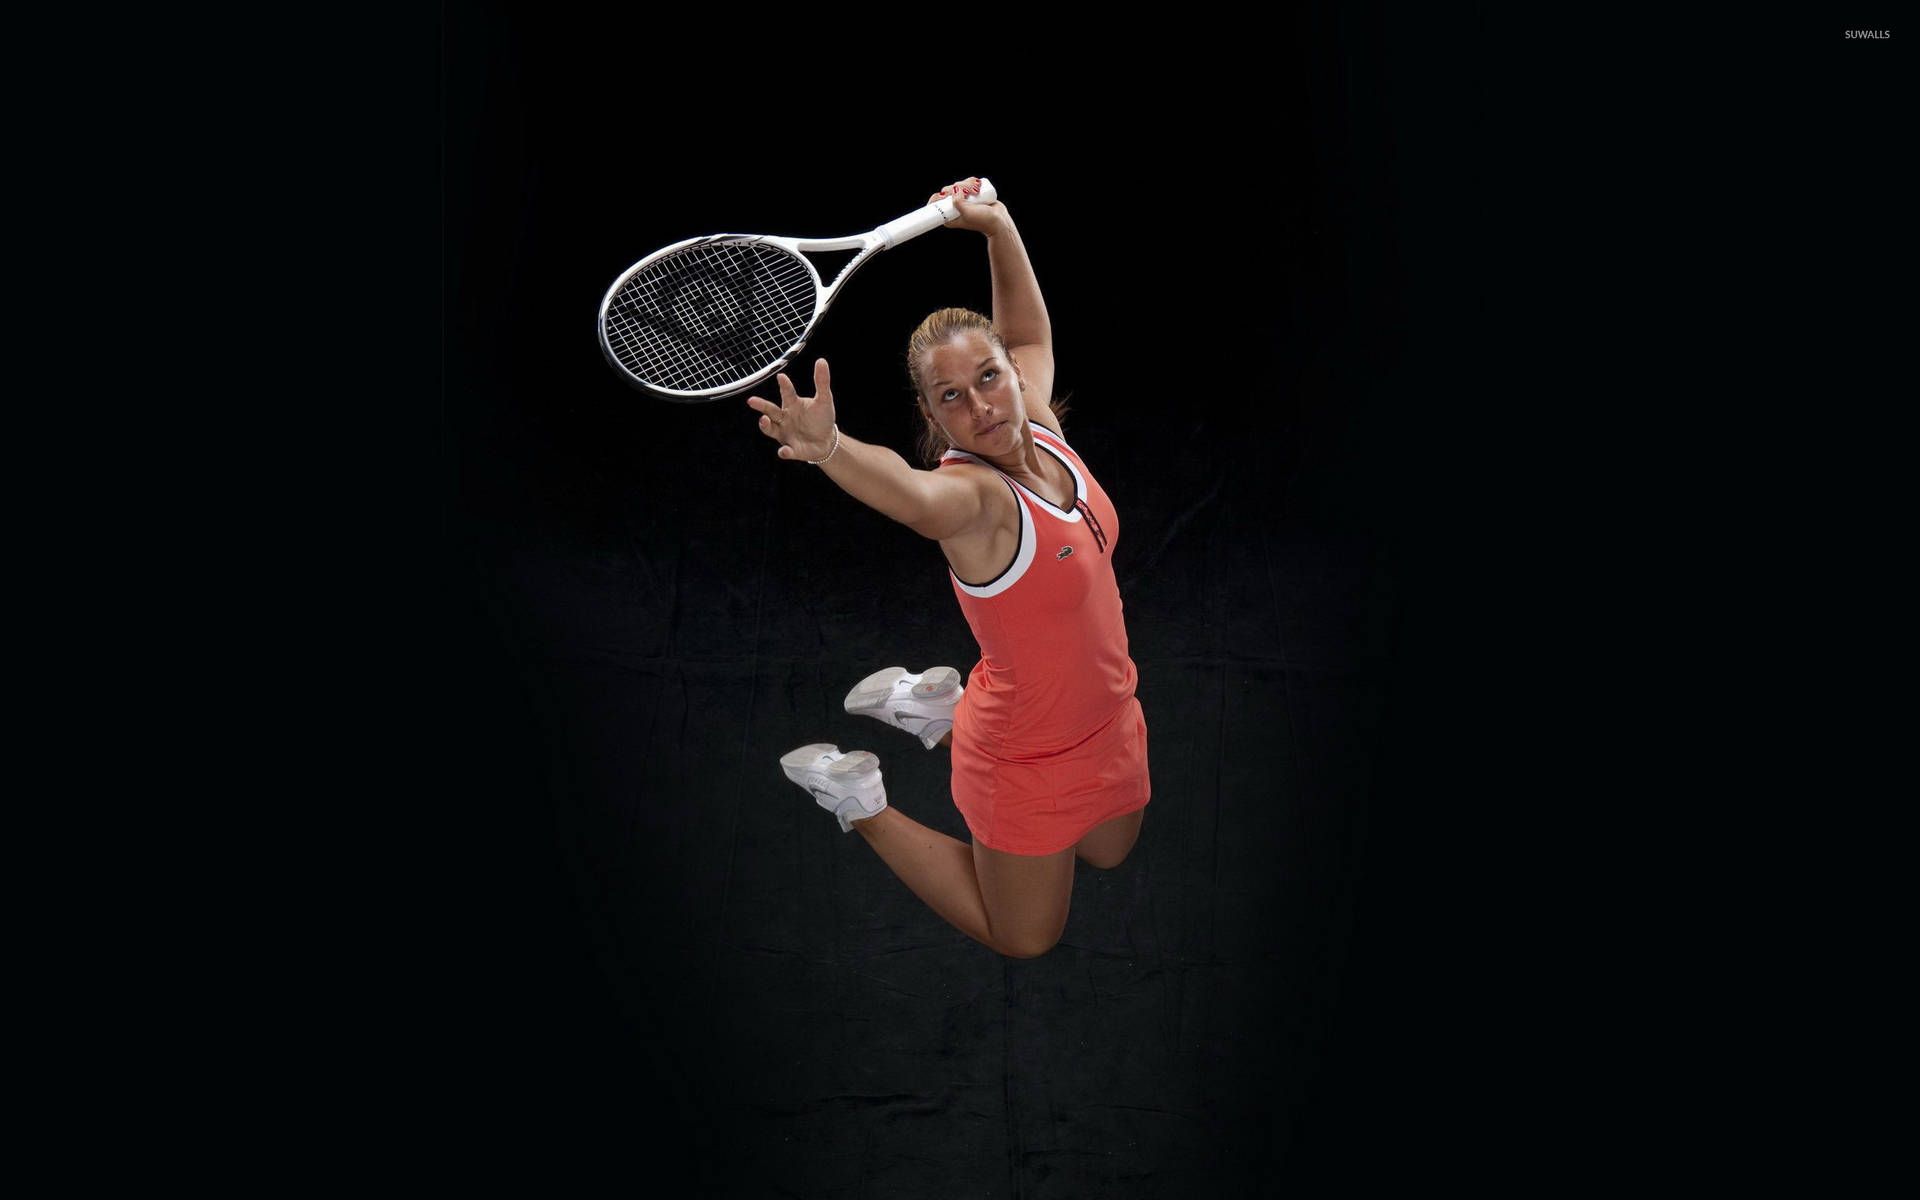 Elena Dementieva In Action On The Tennis Court Wallpaper